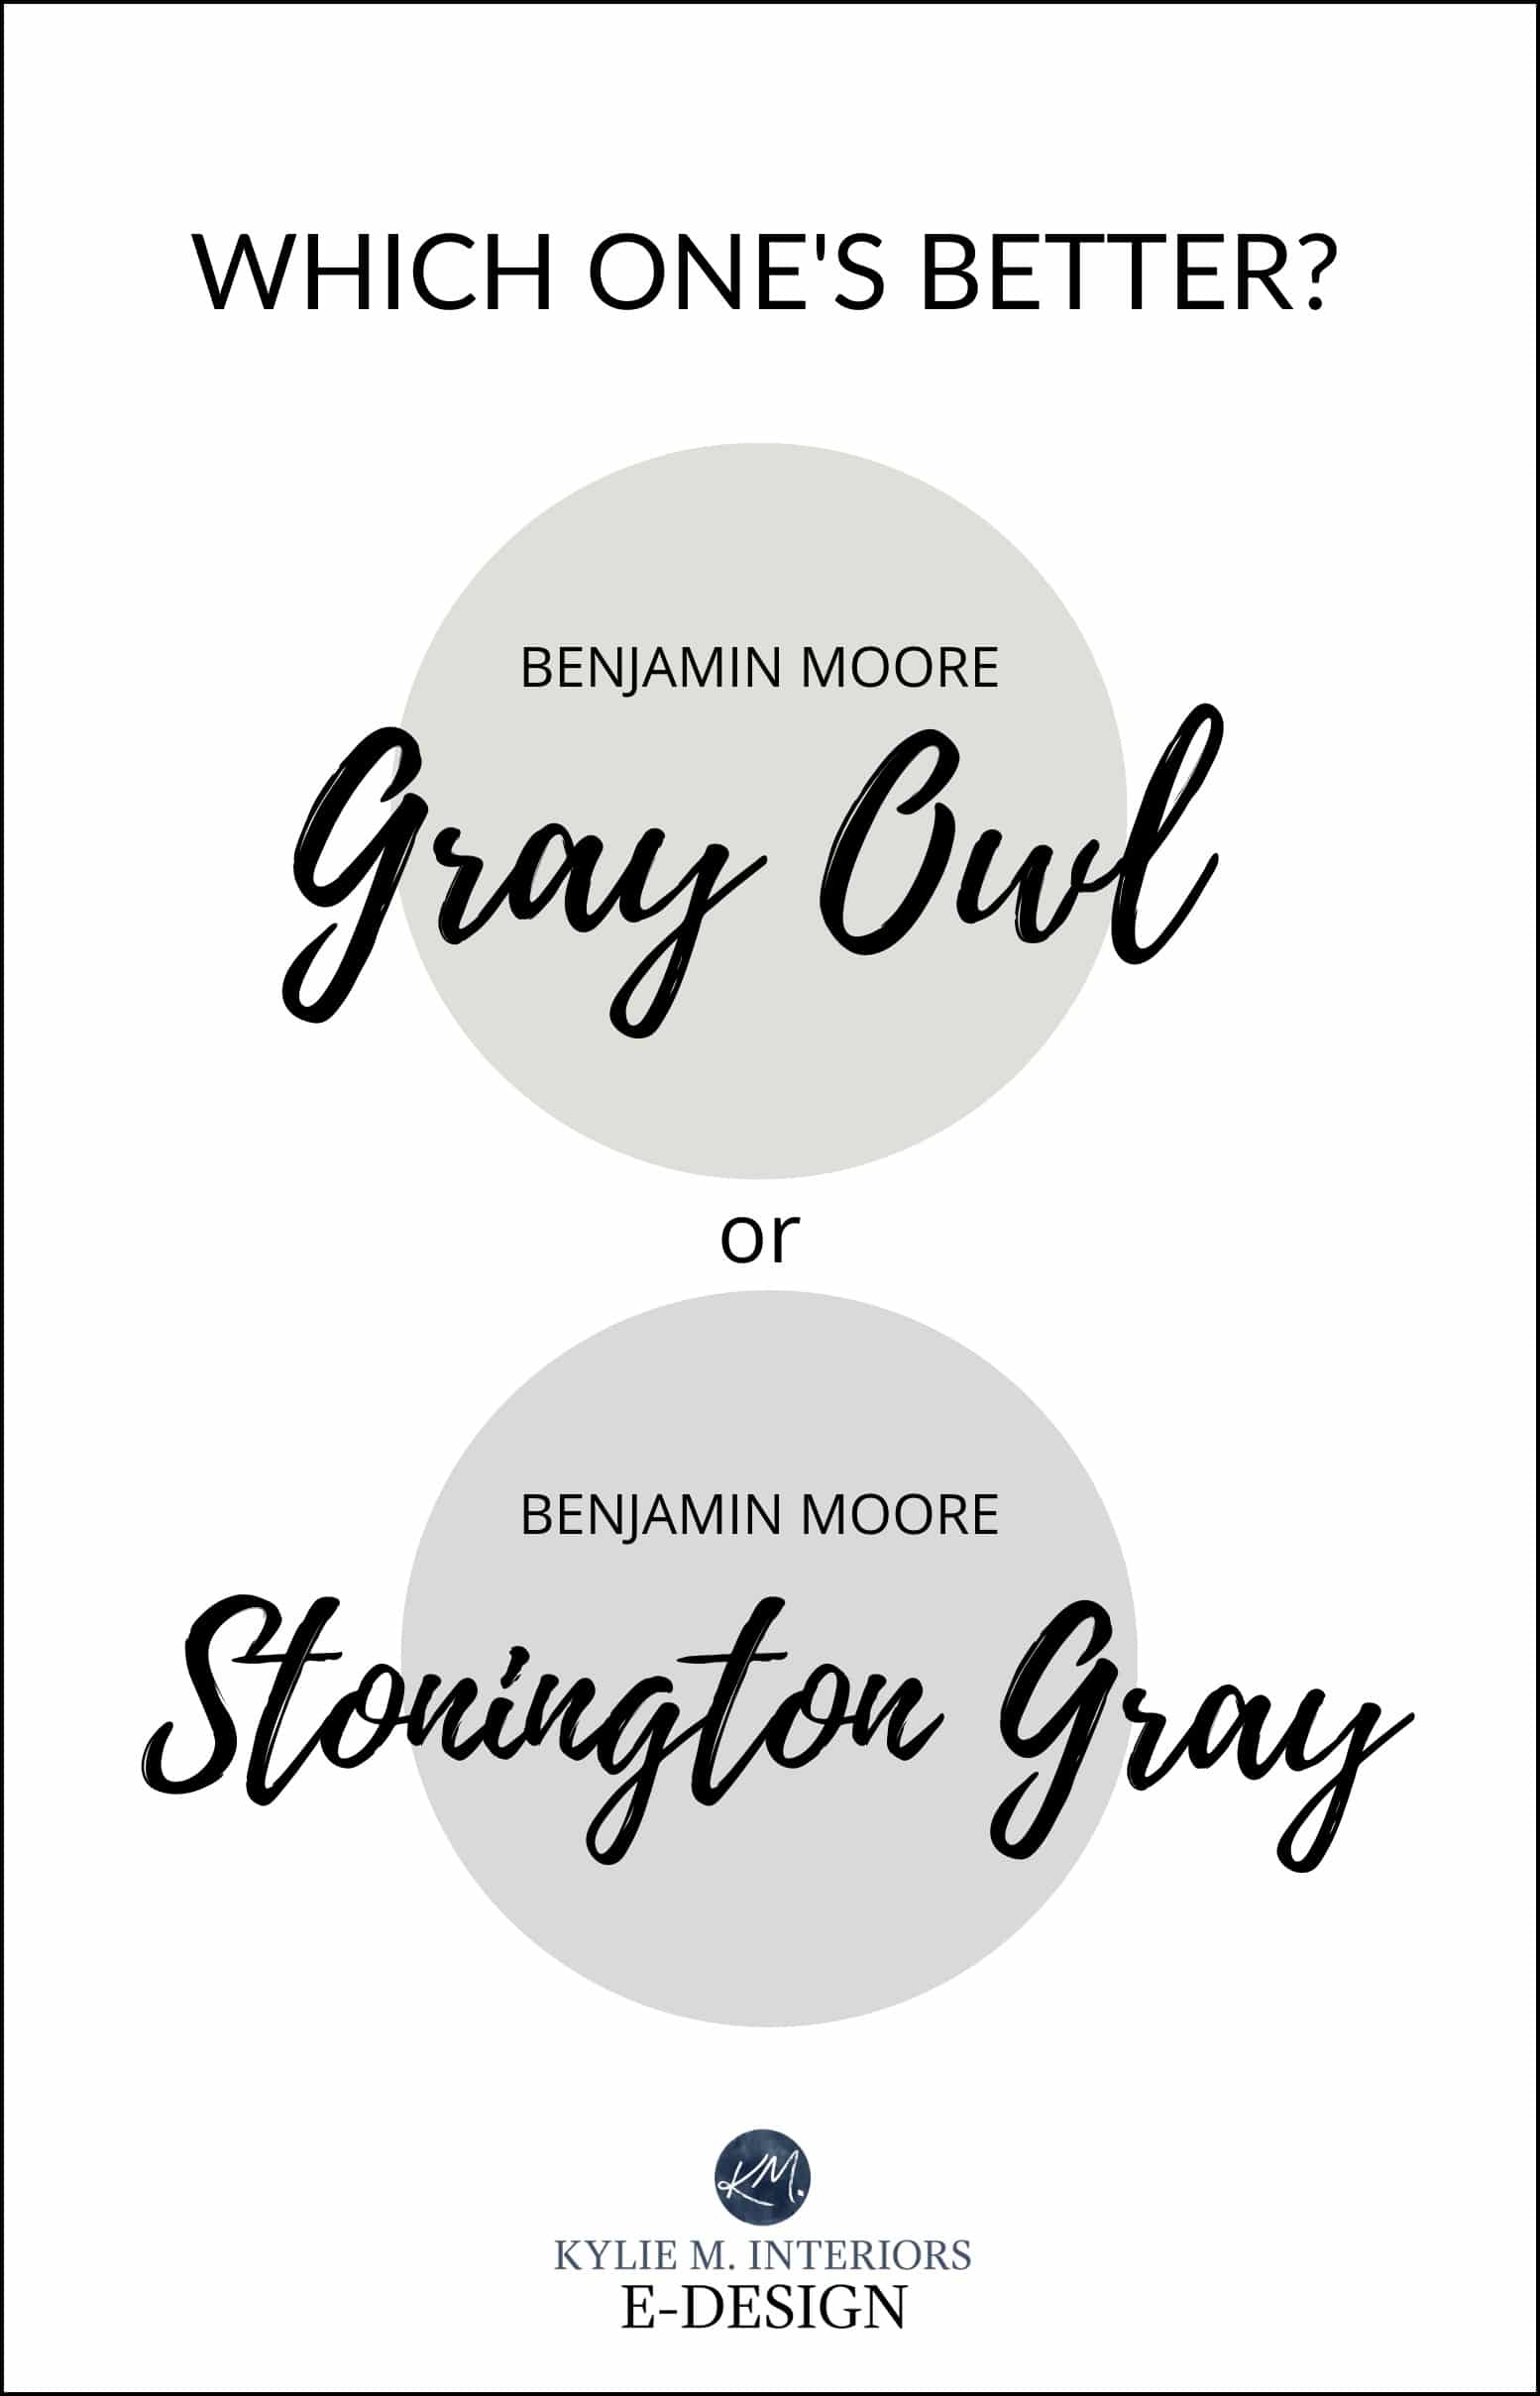 Paint colour review, compare Benjamin Moore Gray Owl vs Stonington Gray, best neutral grey paint colours. Kylie M Interiors Edesign, virtual online paint colour advice